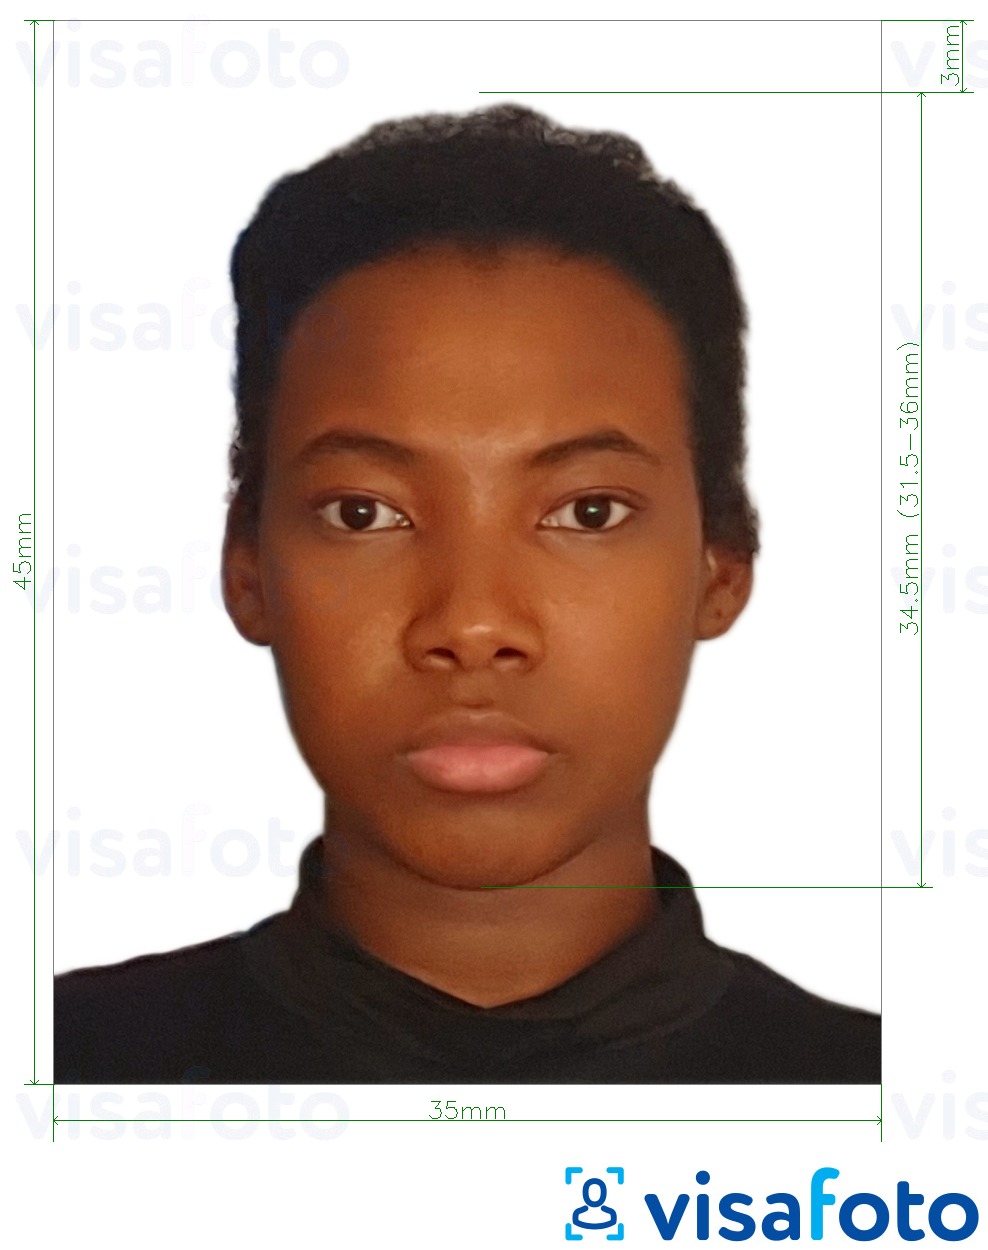 Przykład zdjęcia dla Paszport kameruński 35x45 mm (3,5x4,5 cm) z podaniem dokładnego rozmiaru.